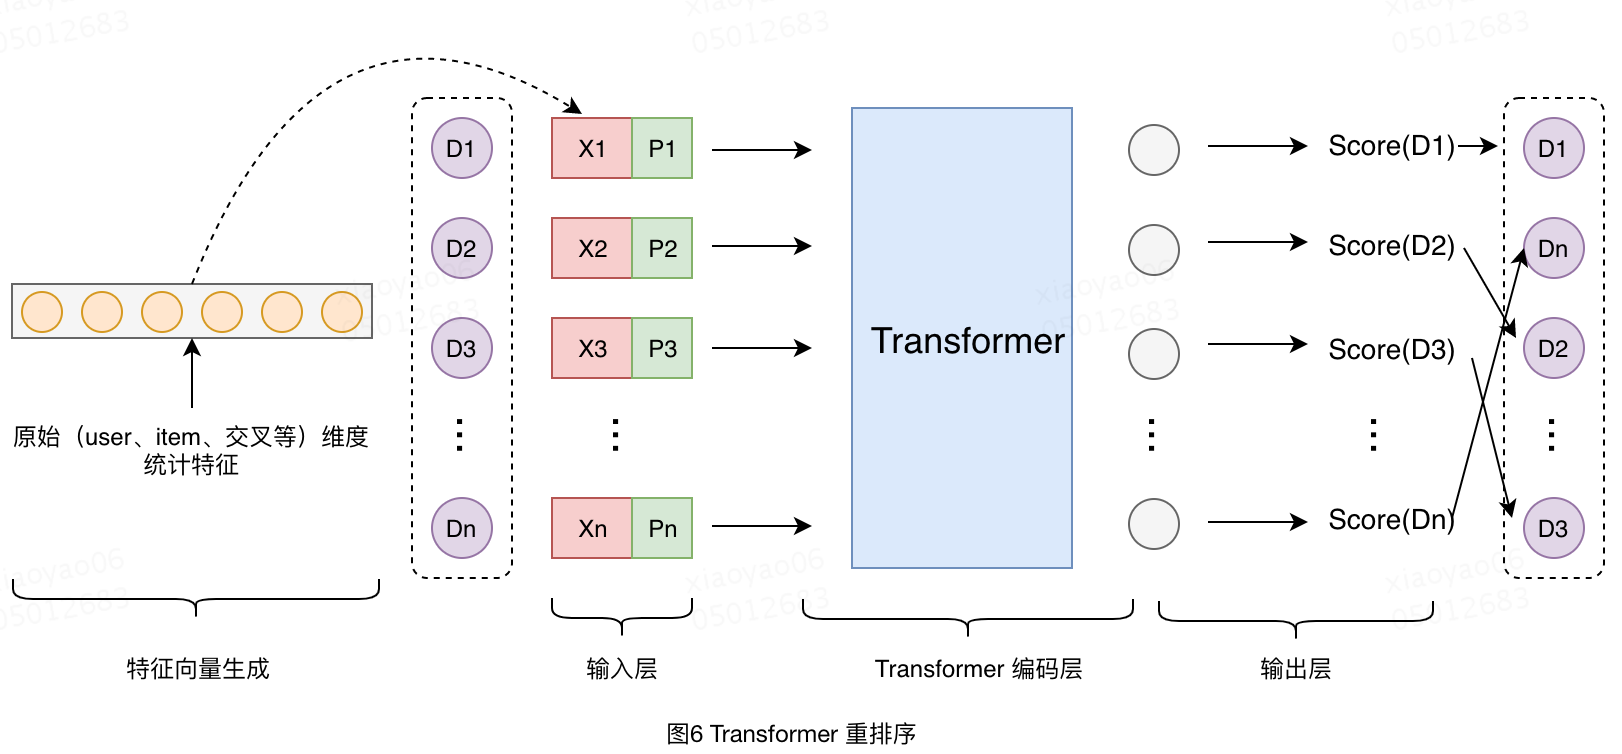 20.04.16 美团-Transformer在搜索排序中的实践 - 图12